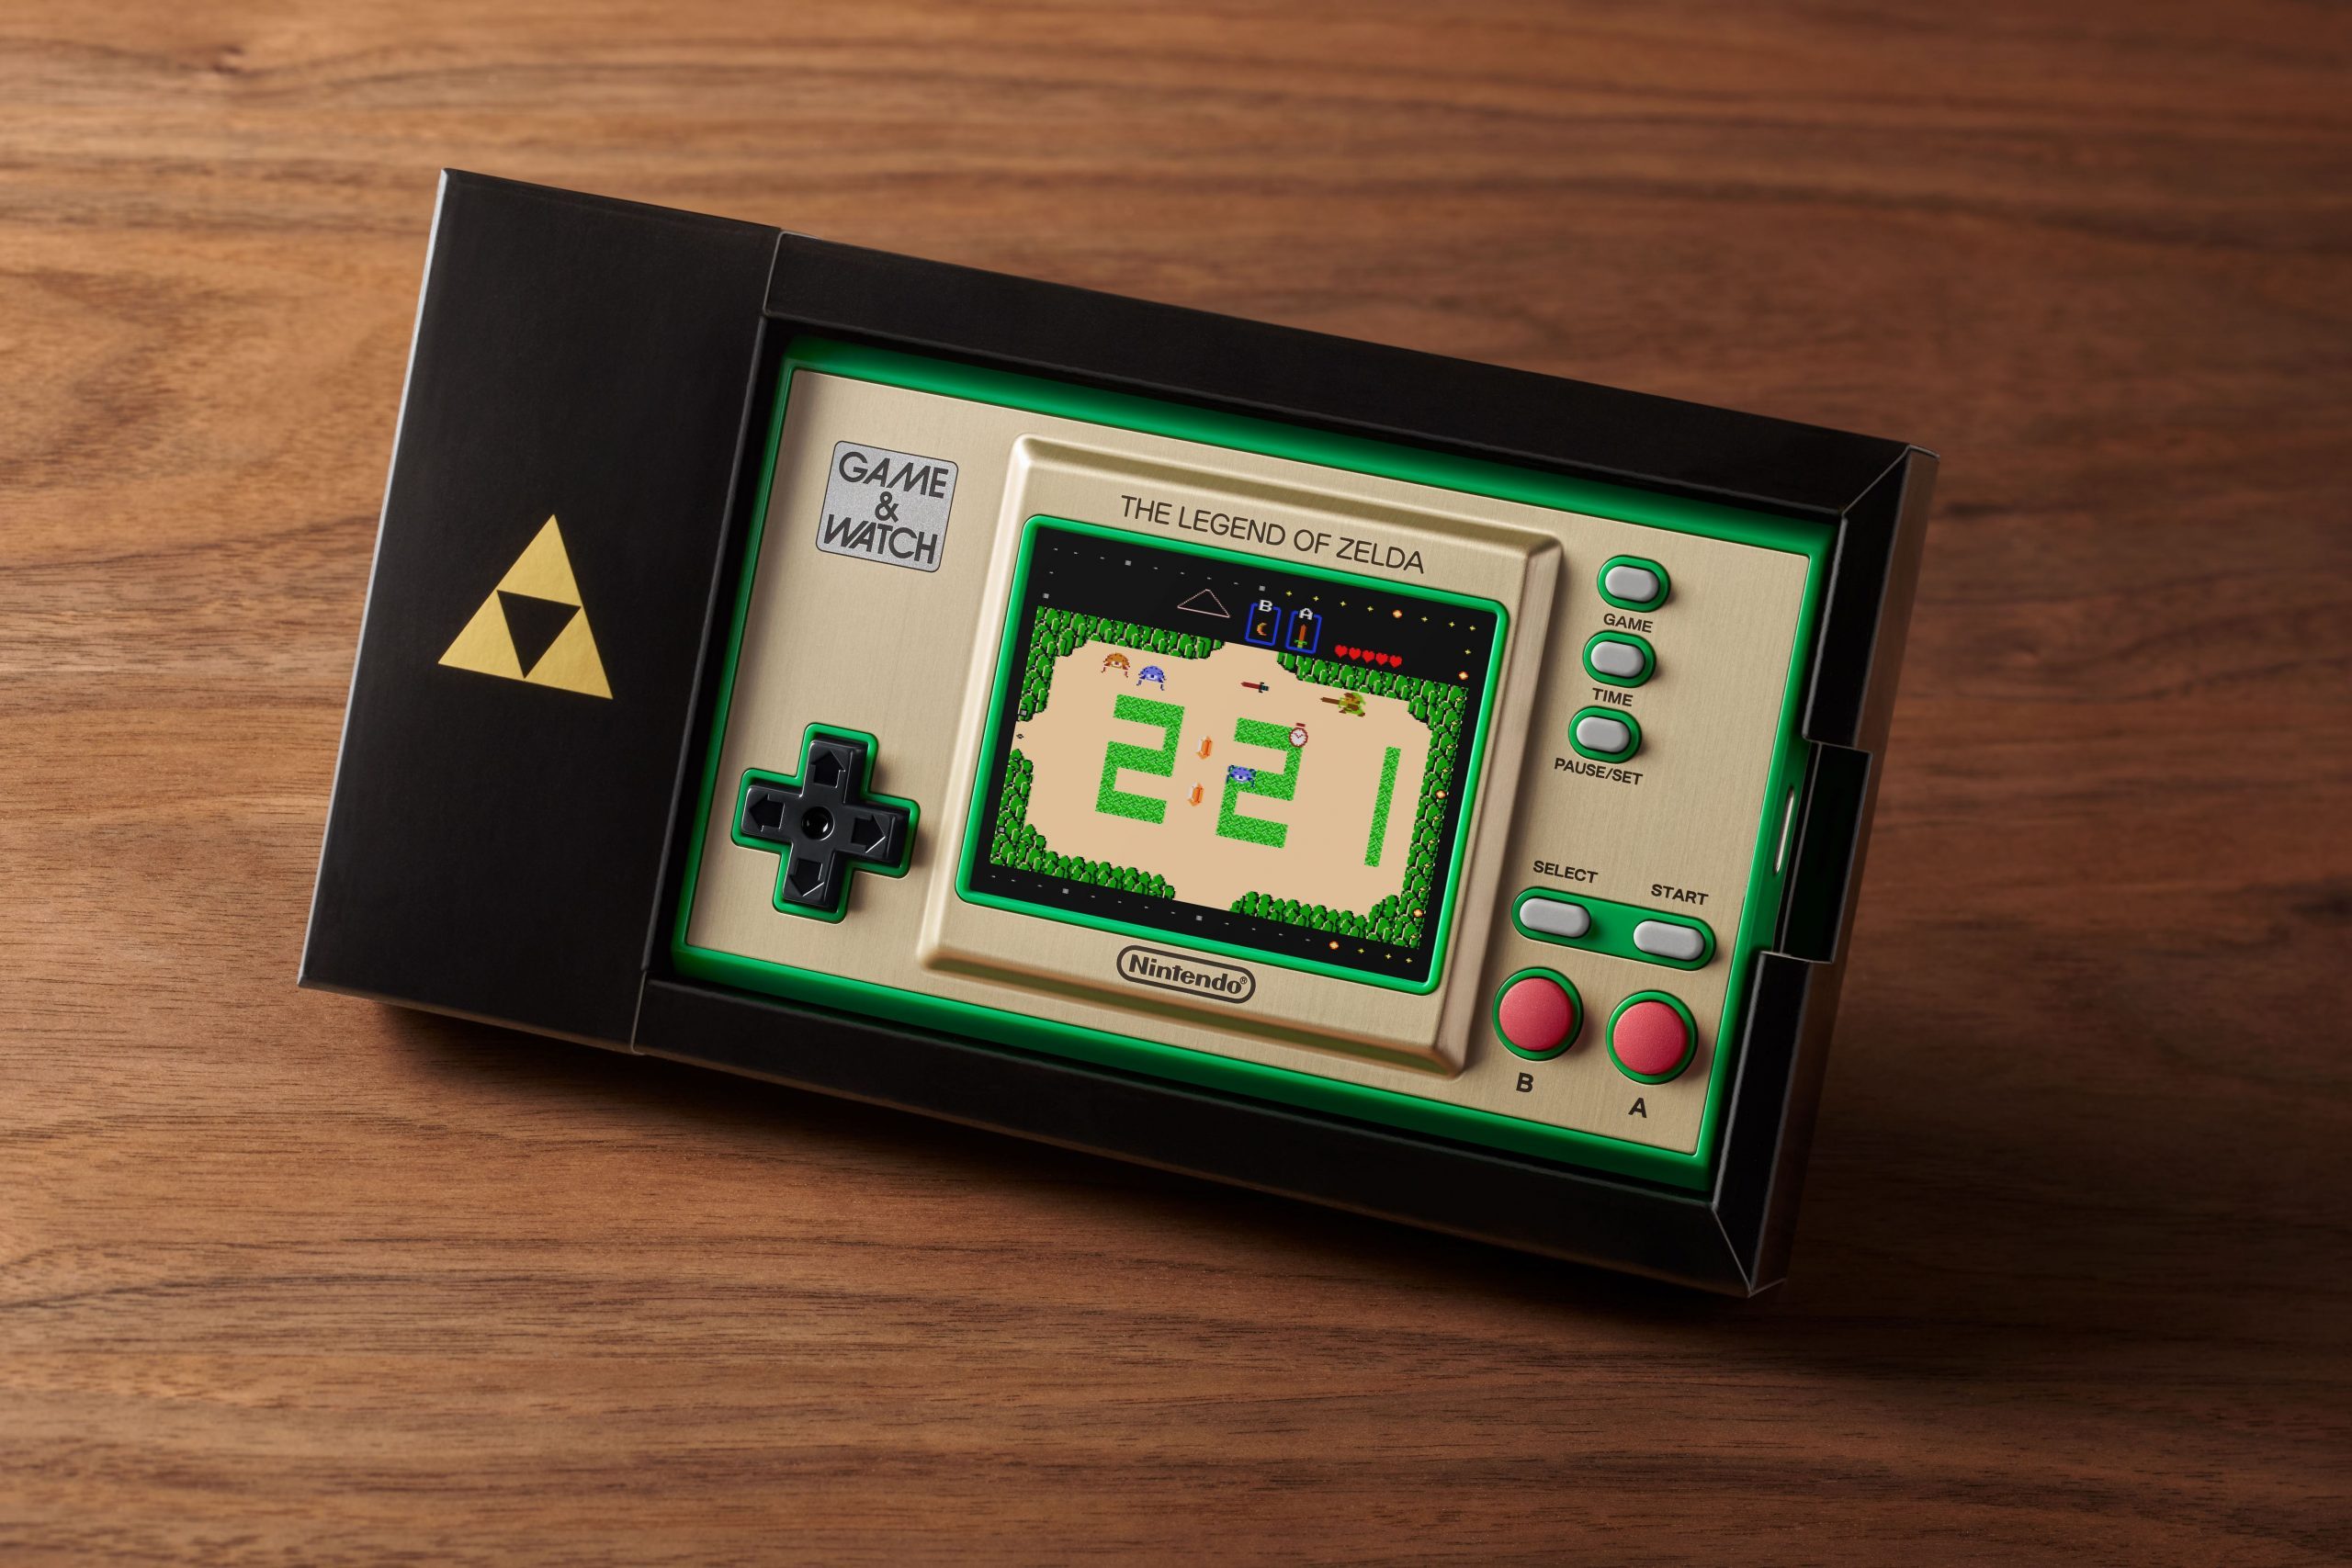 Game & Watch: The Legend Of Zelda